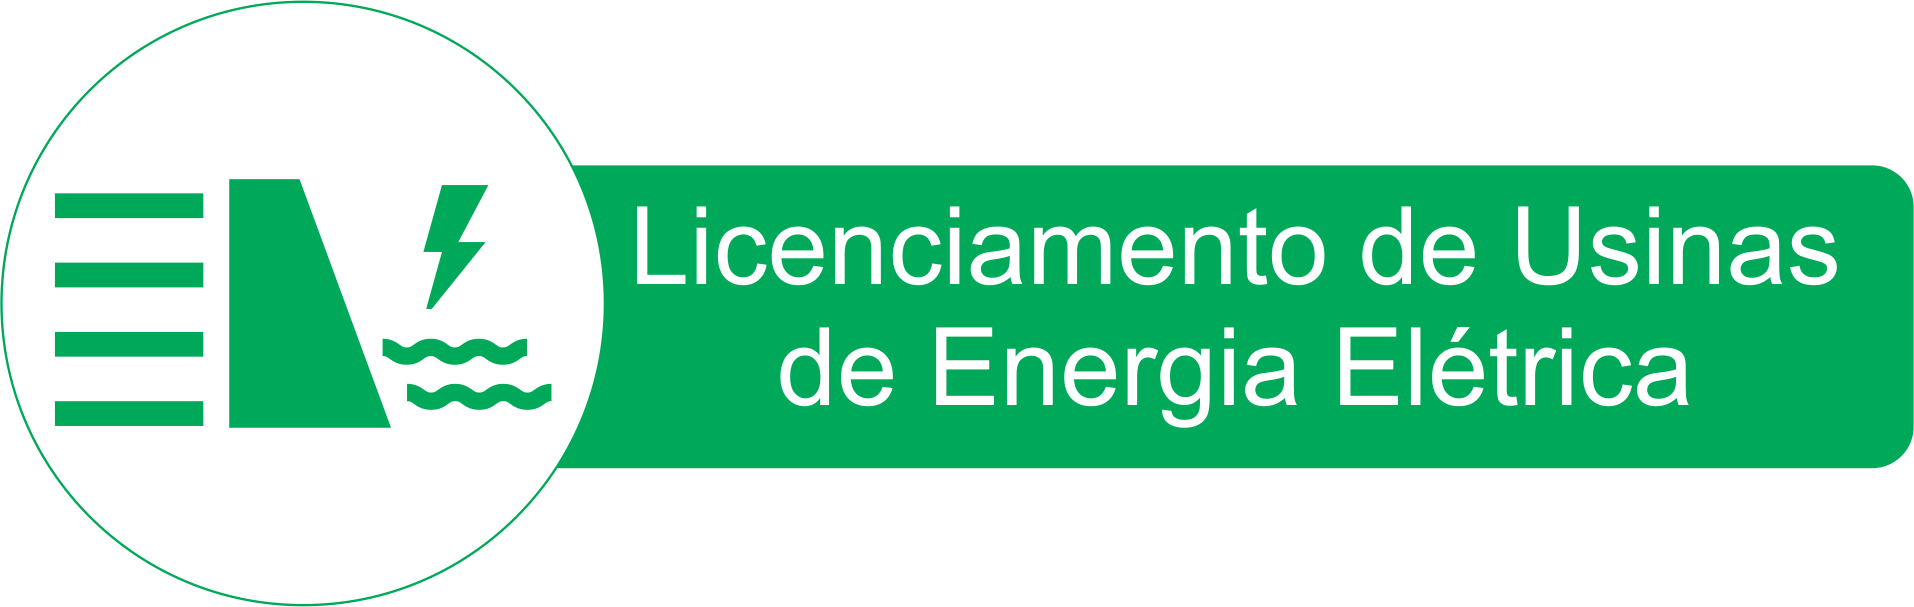 Licenciamento de Usinas de Energia Elétrica